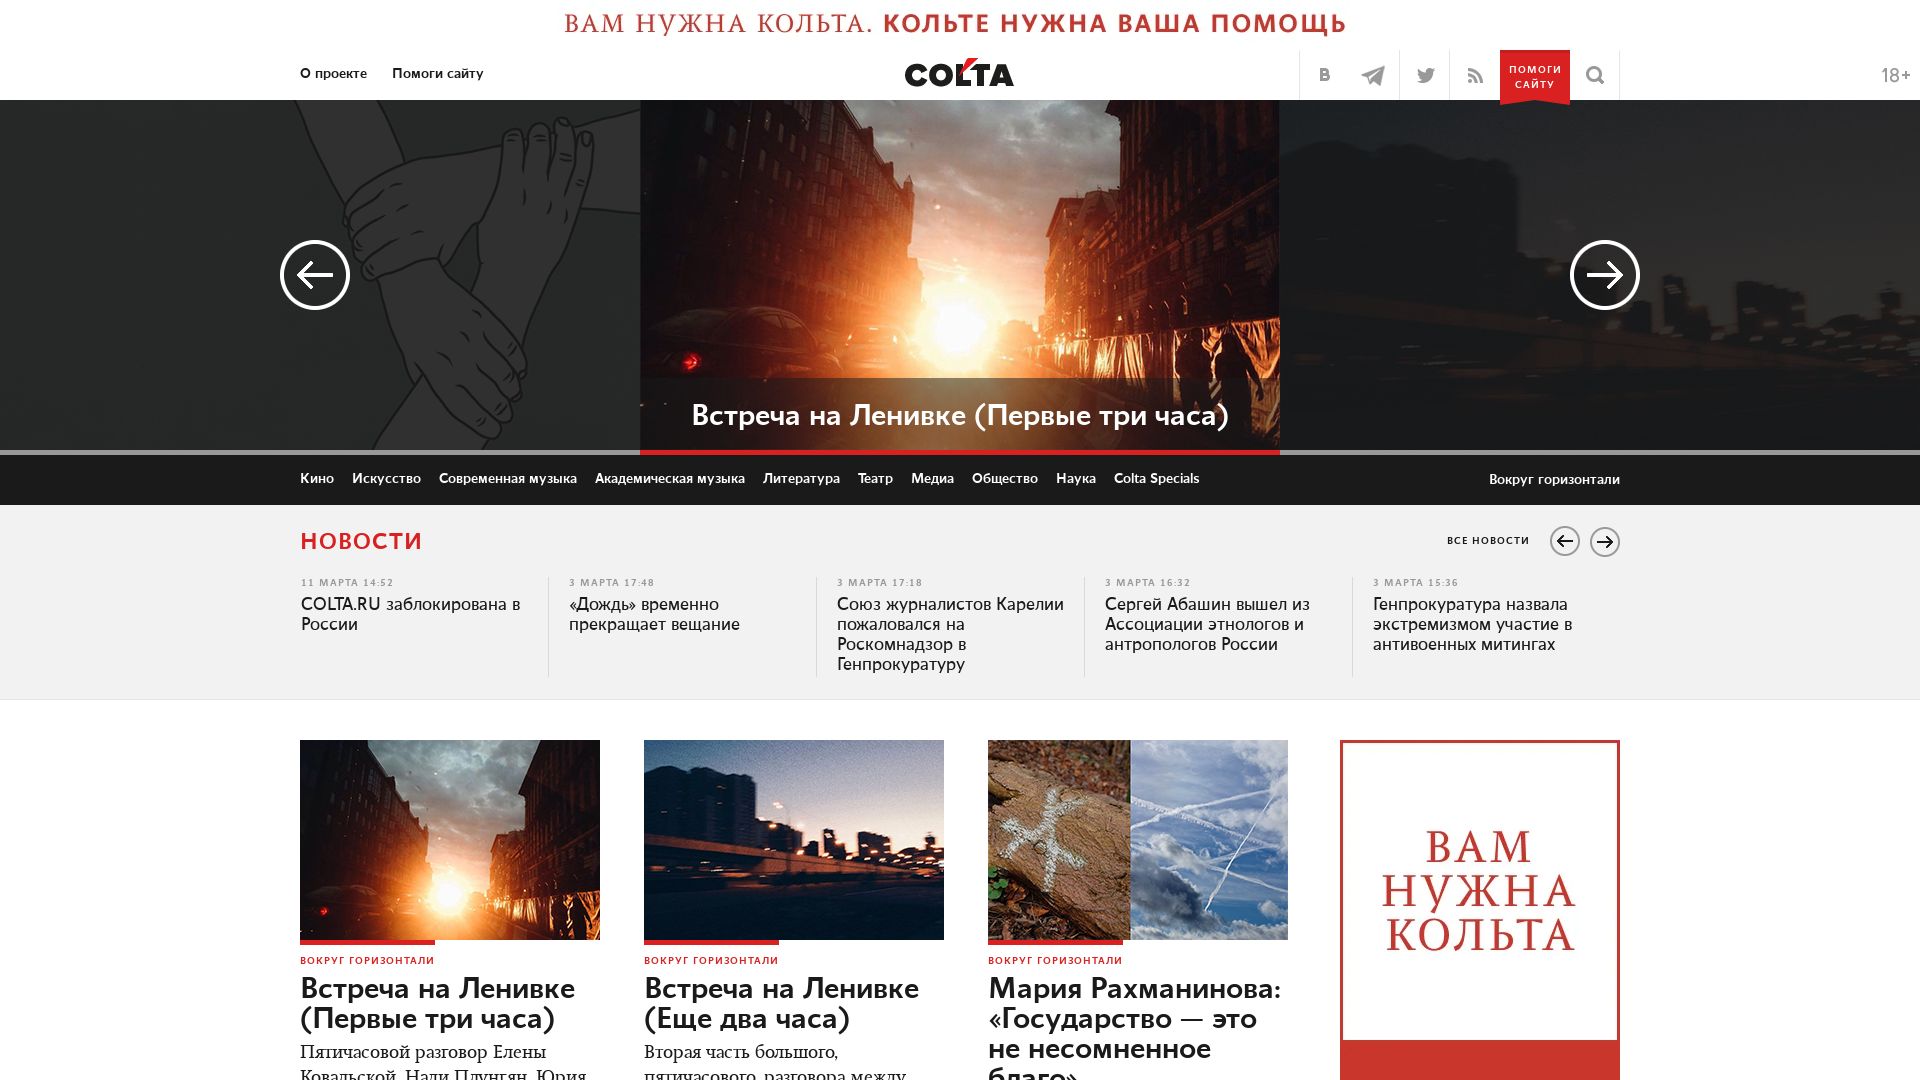 État du site web colta.ru est   EN LIGNE